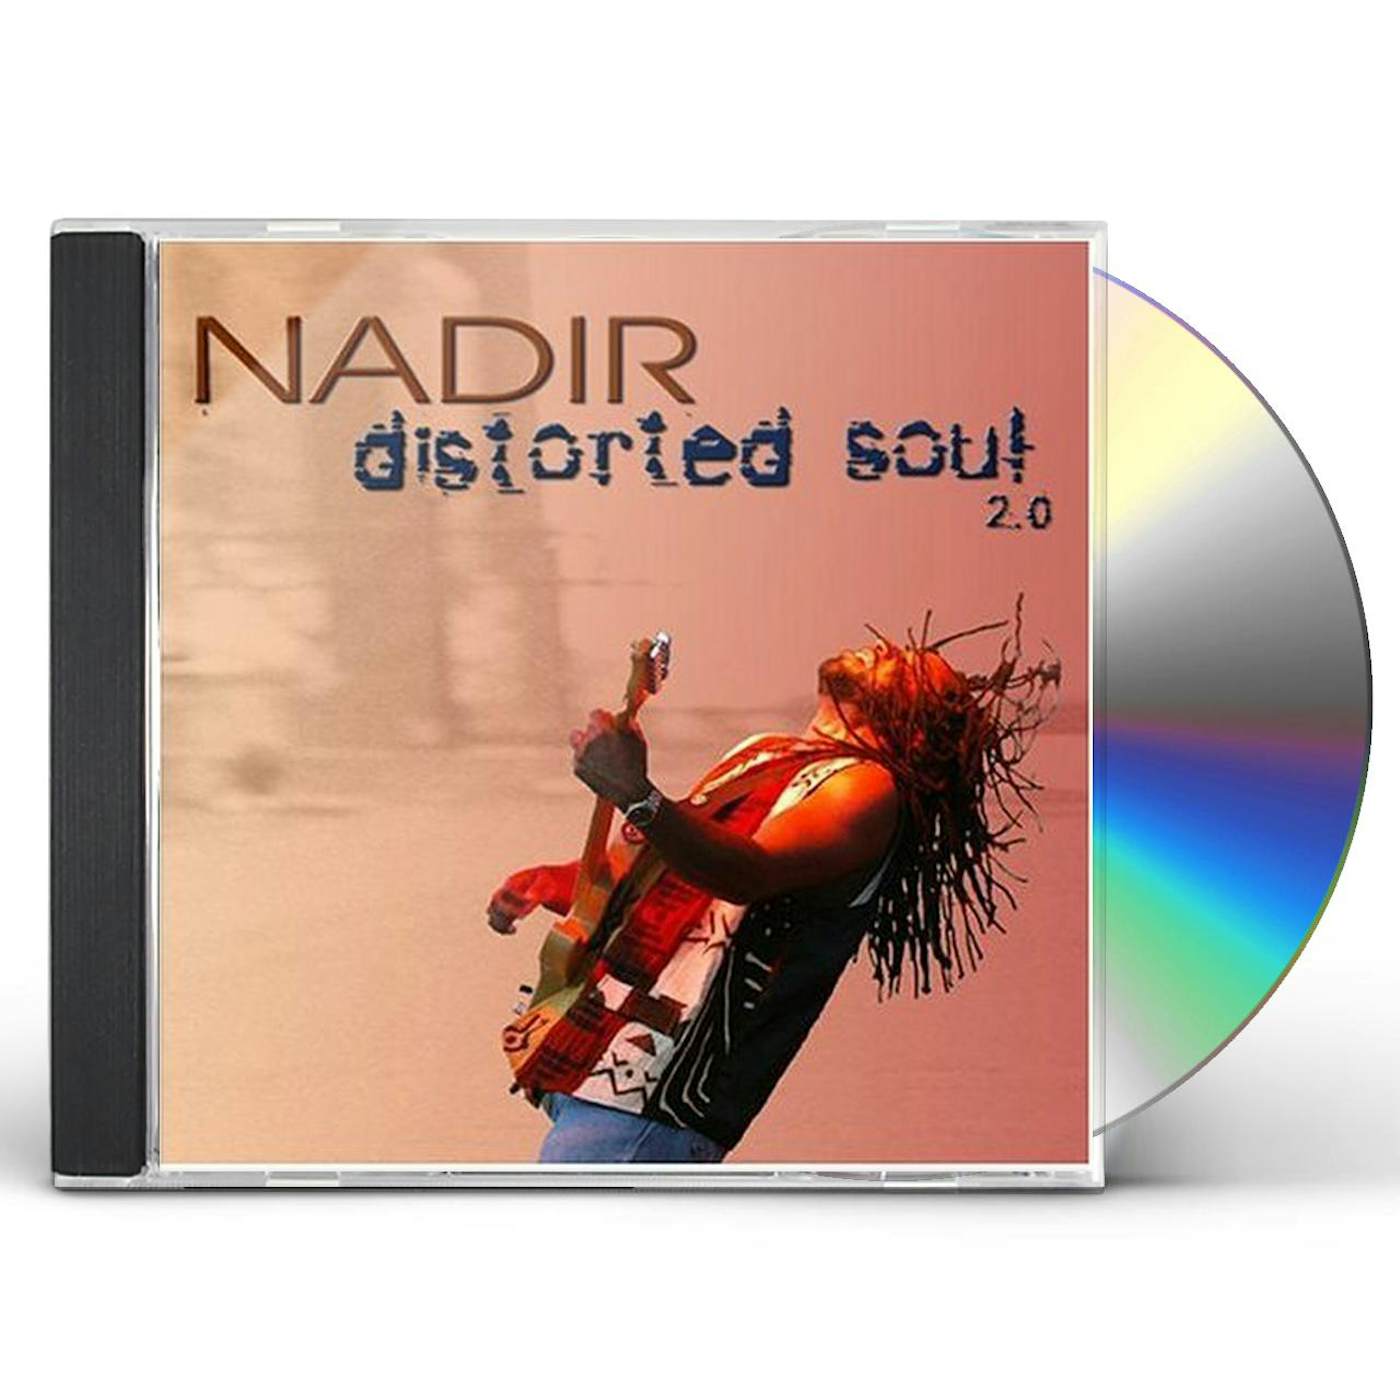 Nadir DISTORTED SOUL 2.0 CD